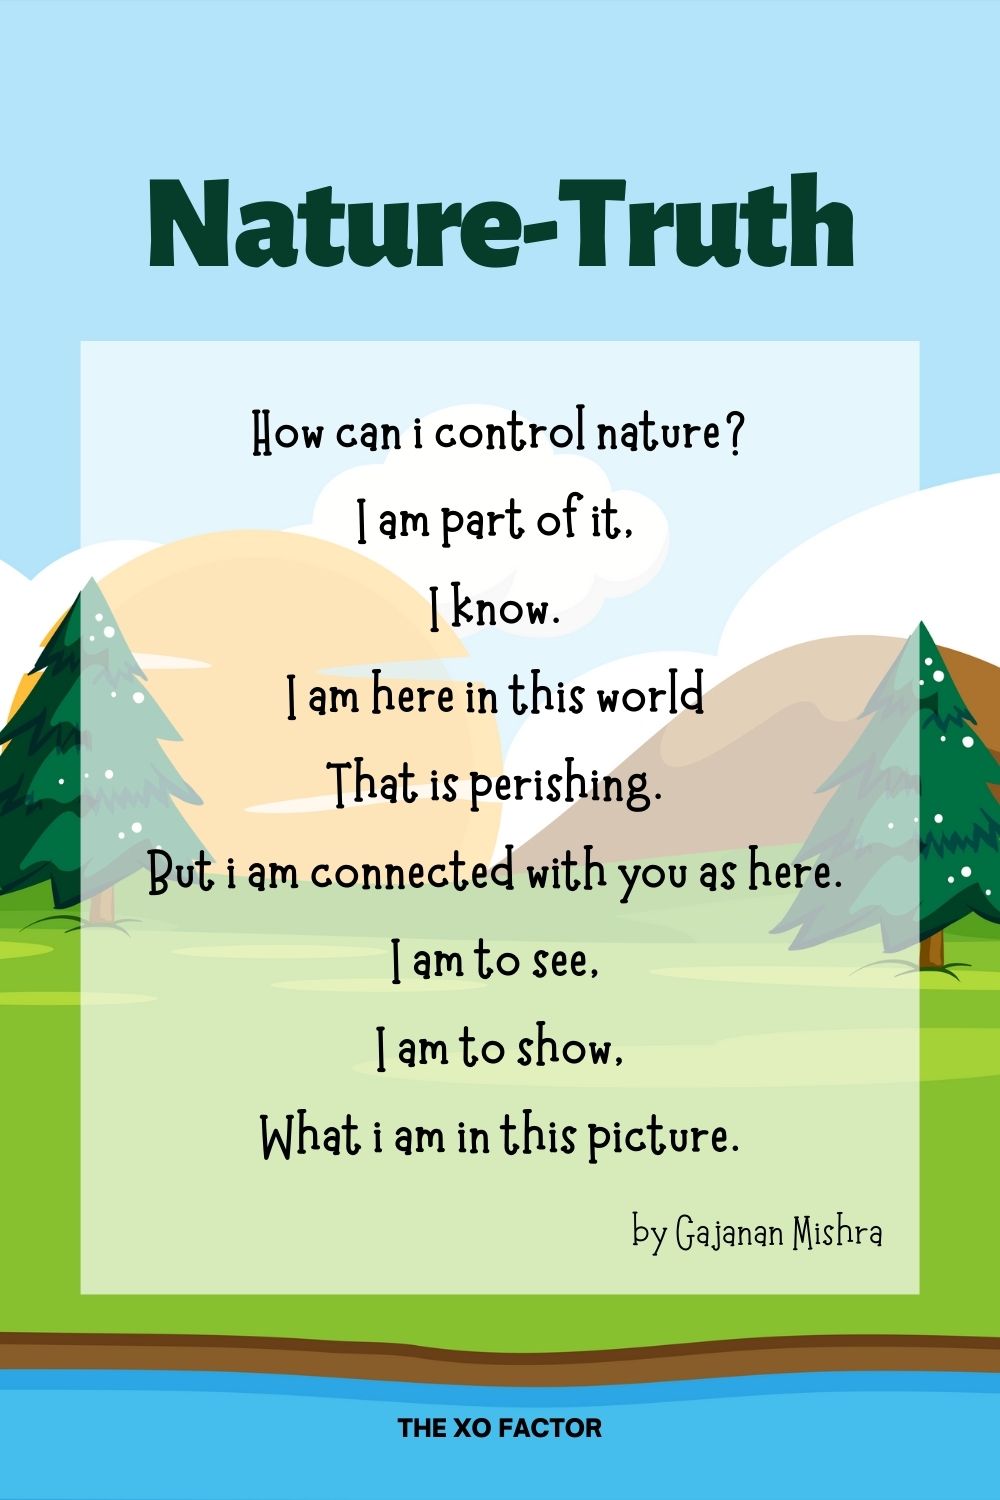 Nature-Truth Poem by Gajanan Mishra